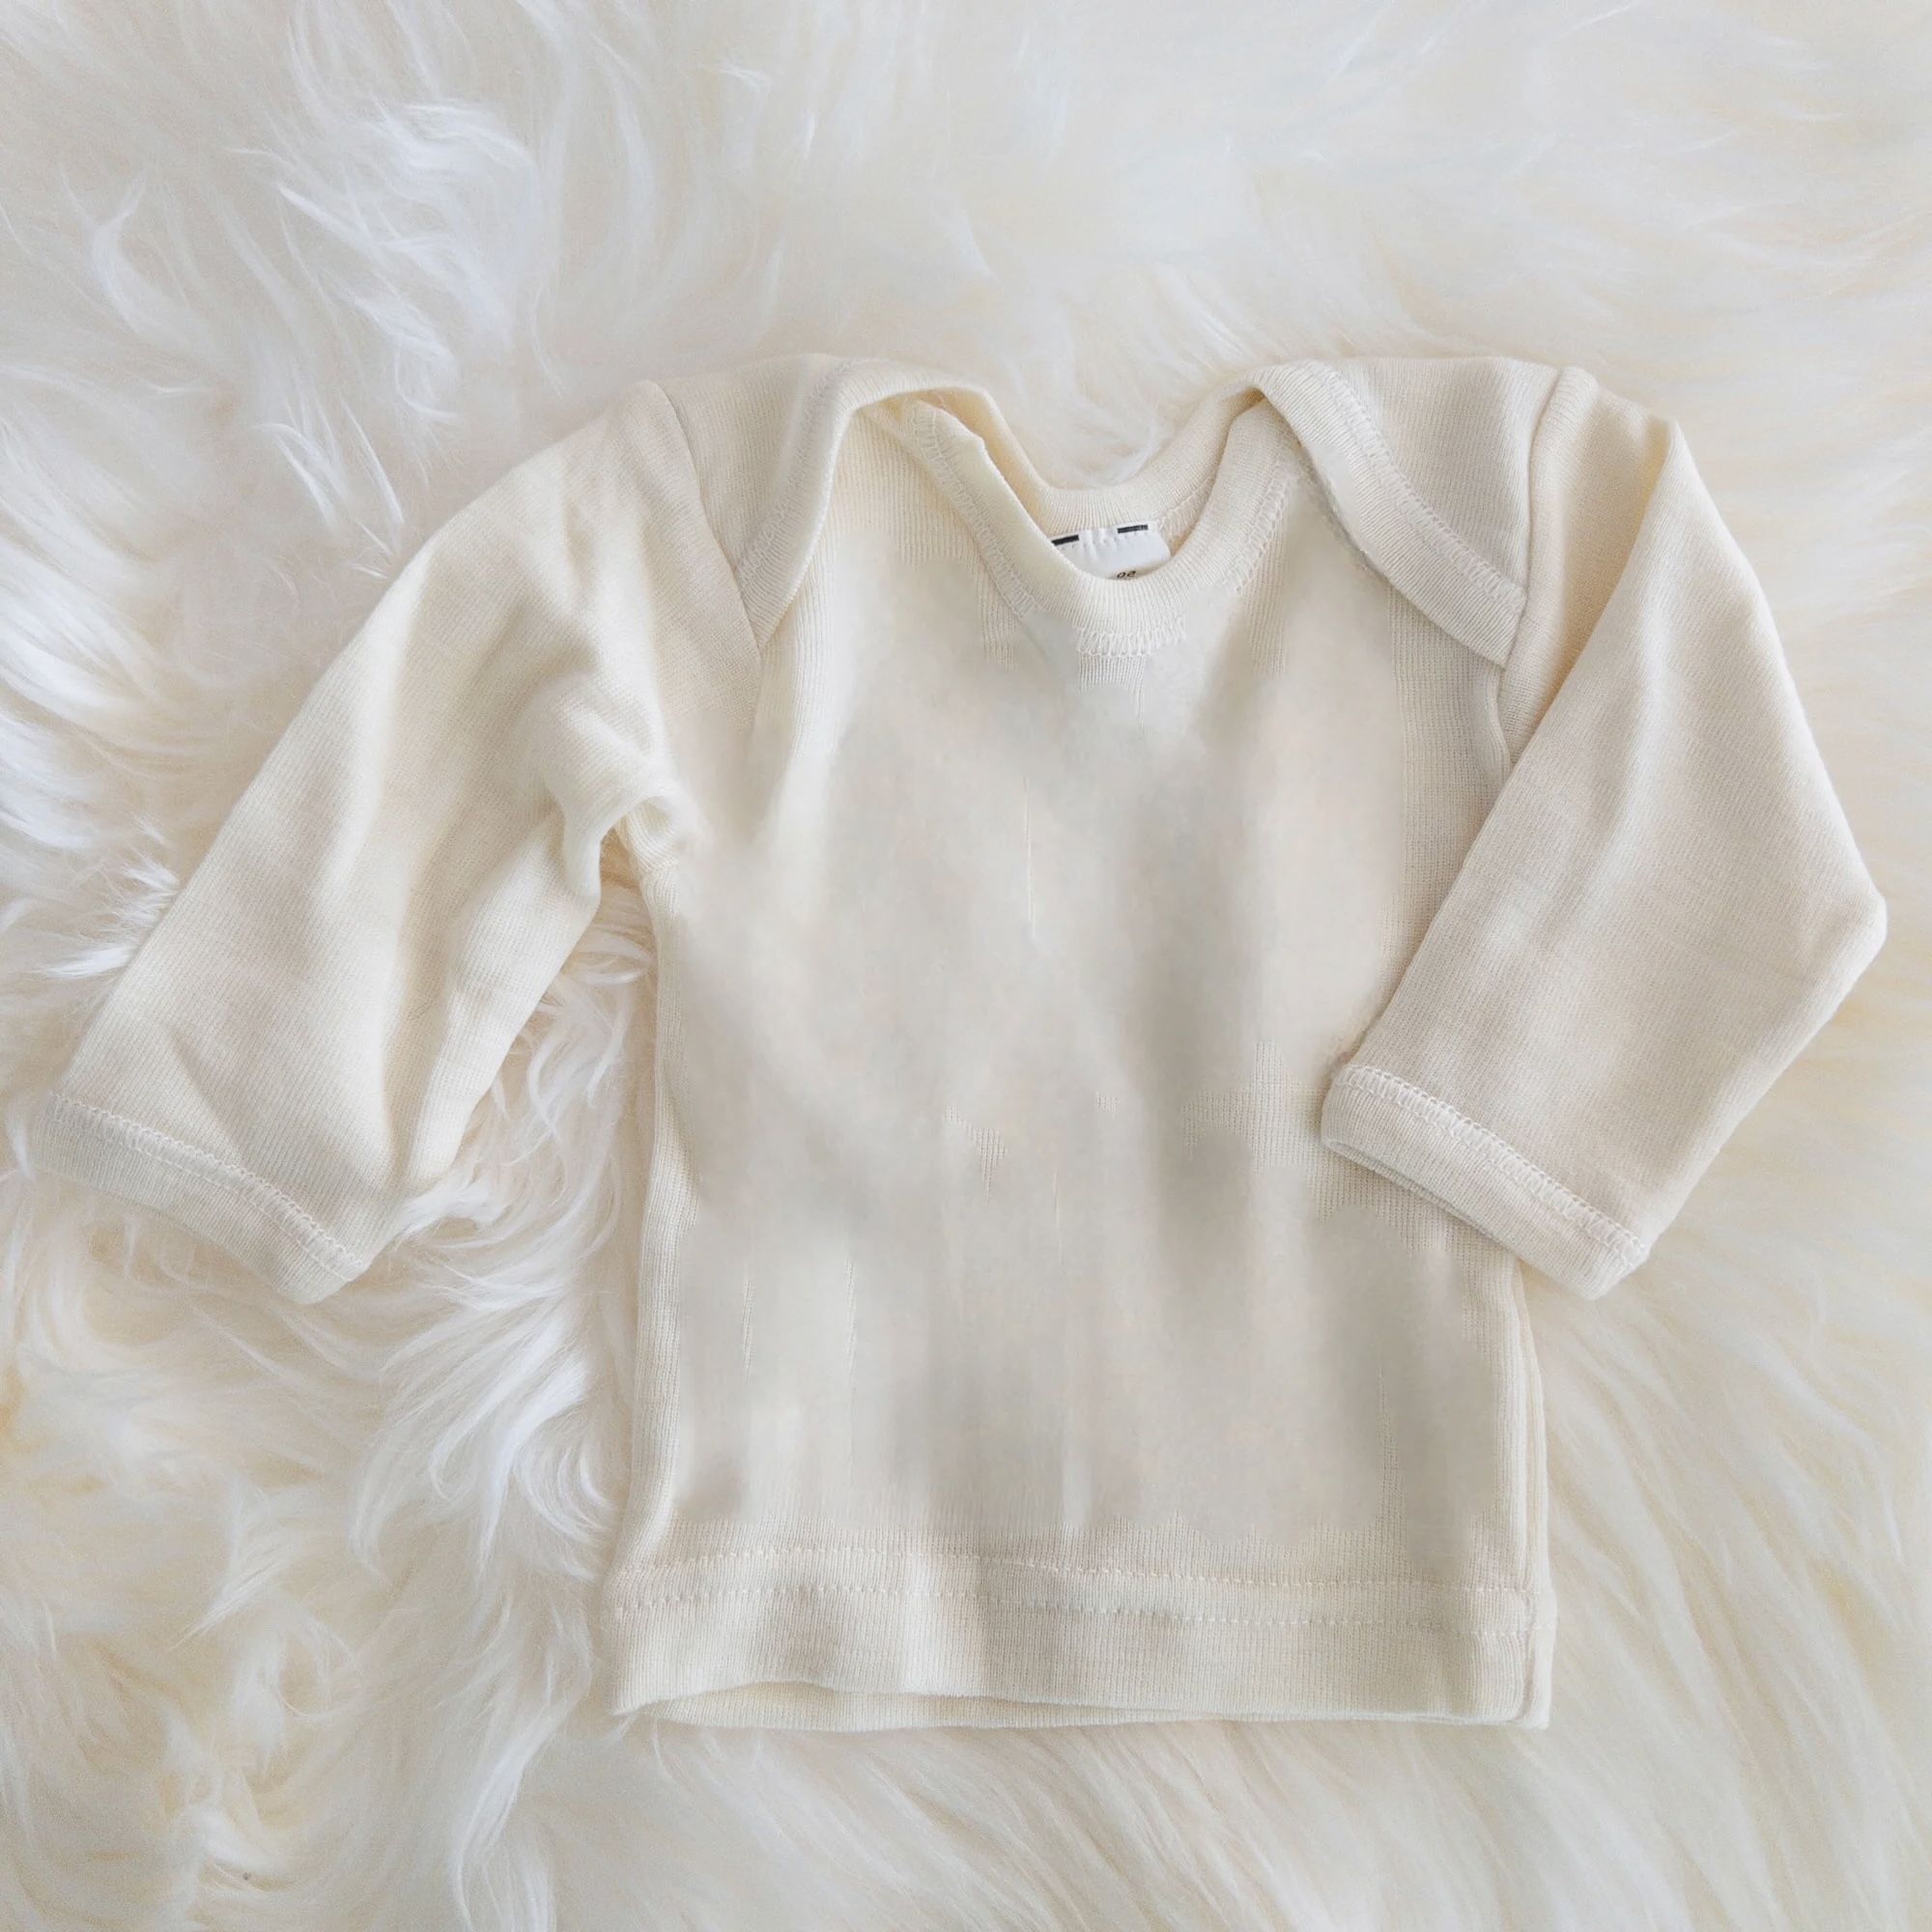 Hocosa baby shirt long-sleeve, wool